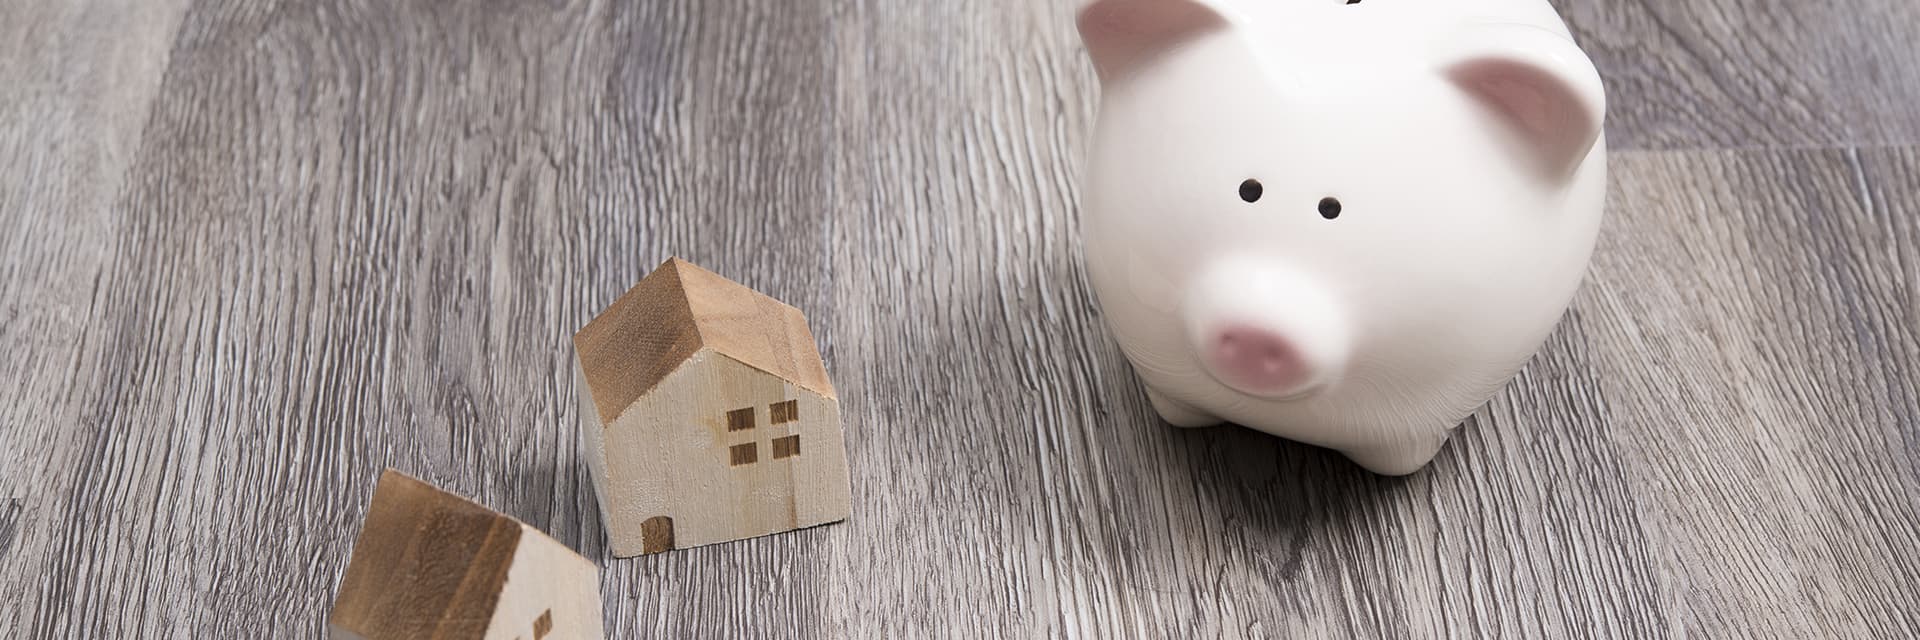 住宅ローン契約時の諸費用を抑える方法